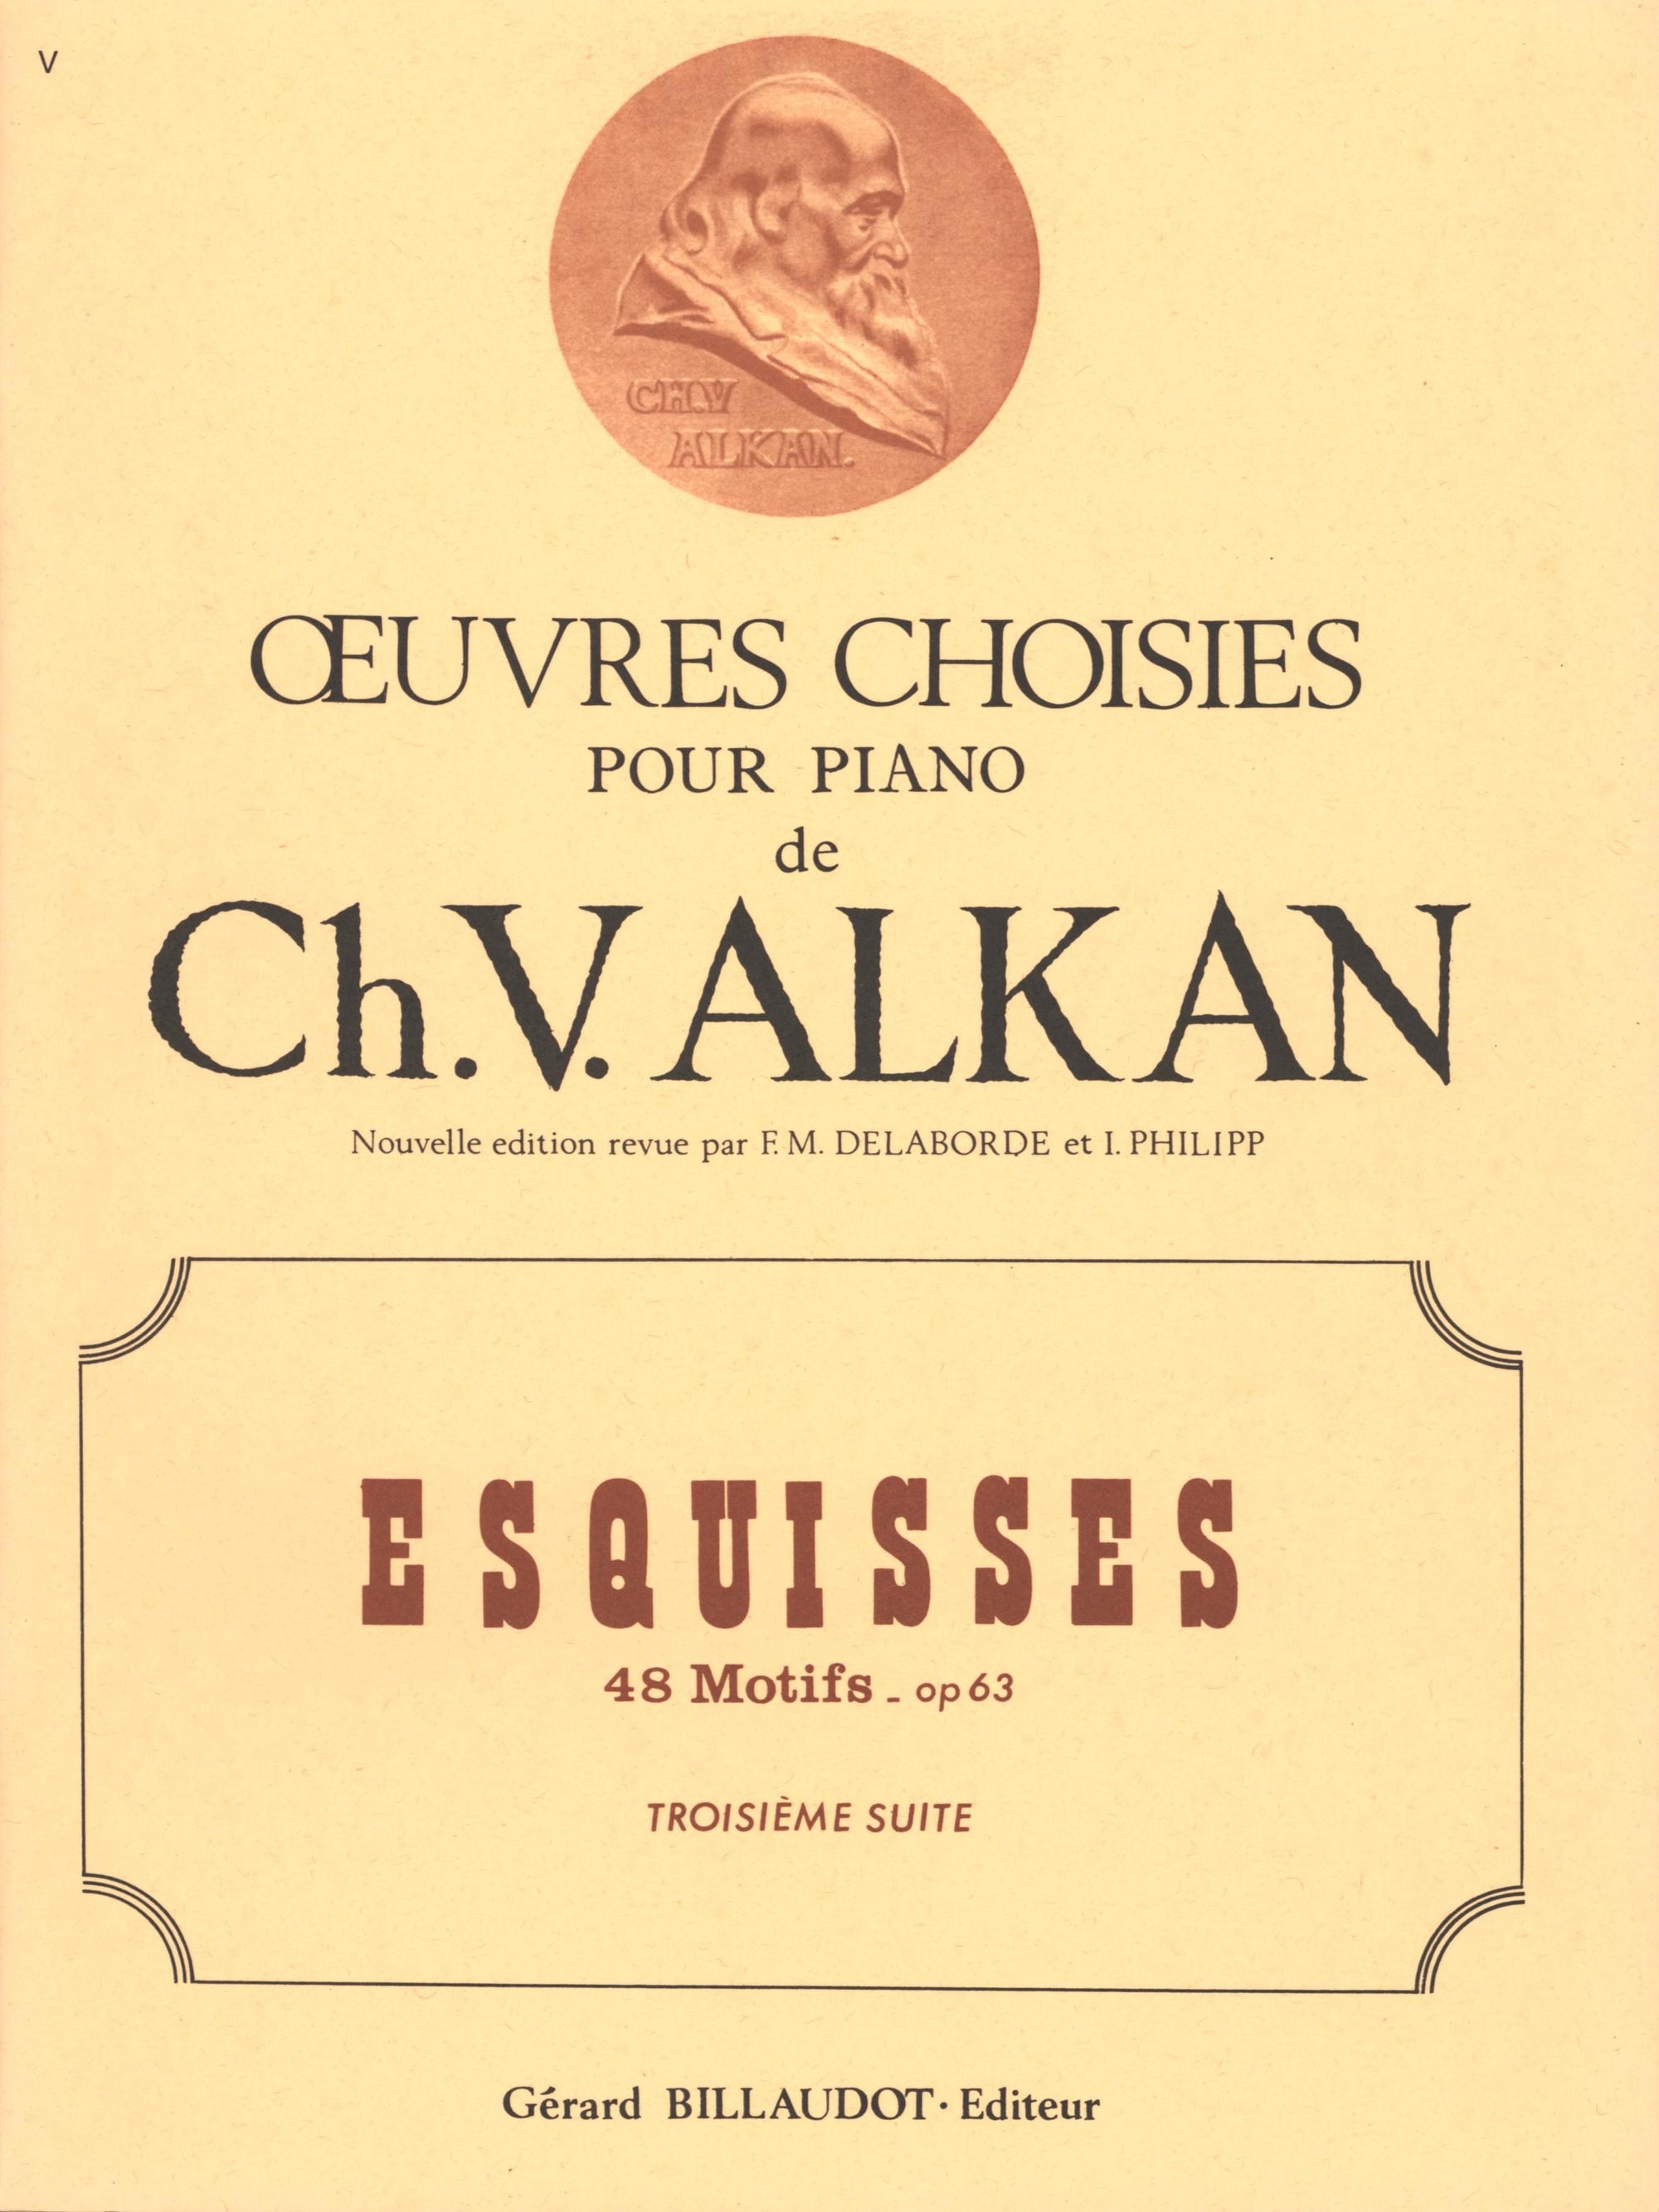 Alkan: Esquisses, Op. 63 - Volume 3 (Nos. 25-36)